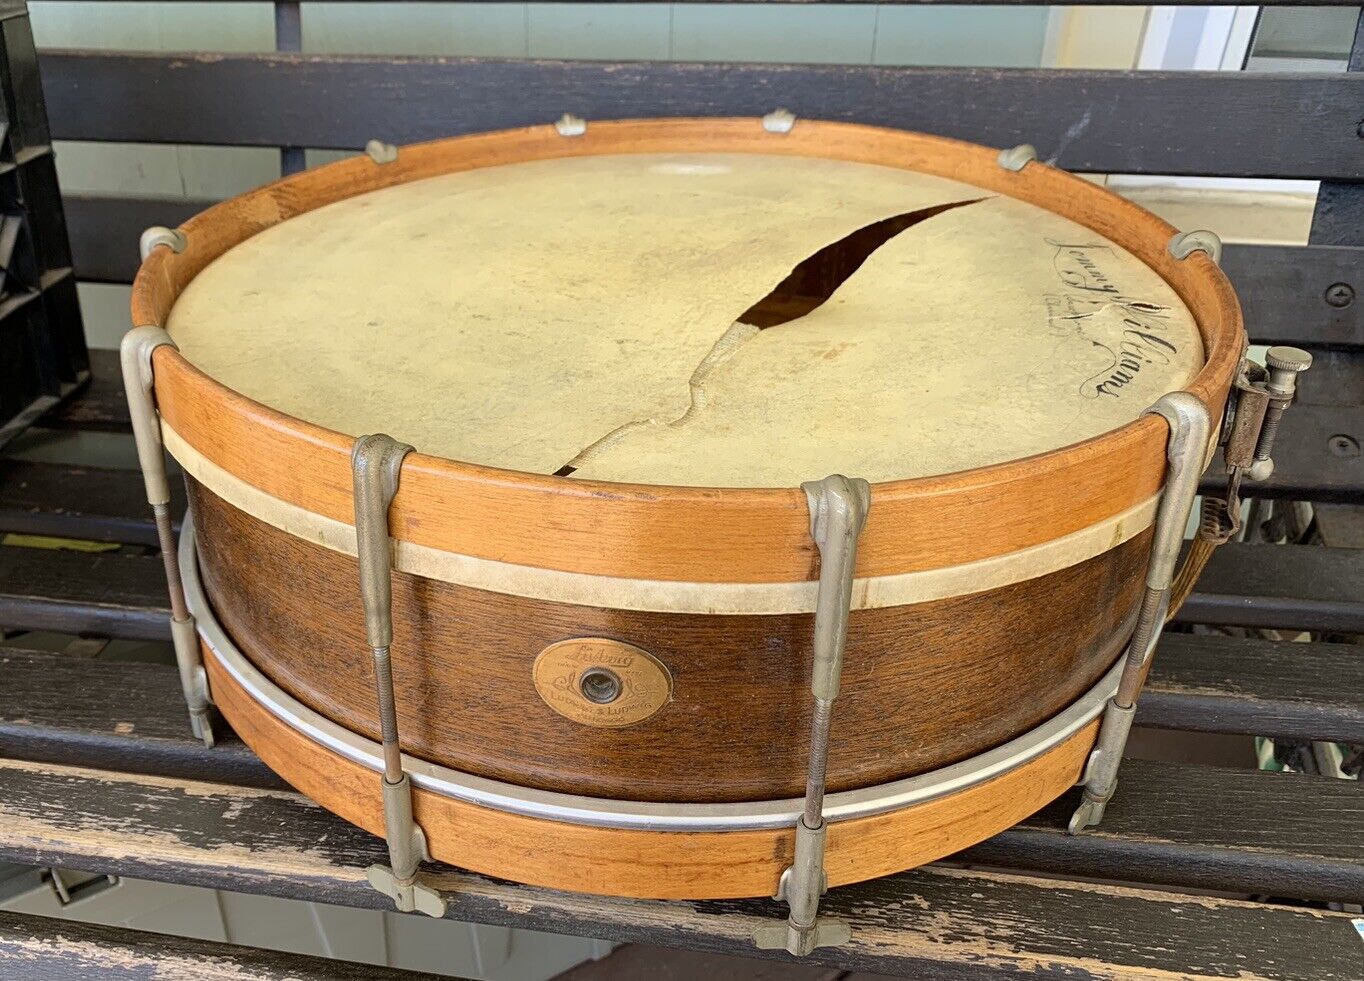 Vintage Antique Ludwig & Ludwig Wood 15” Snare Drum w Drumsticks